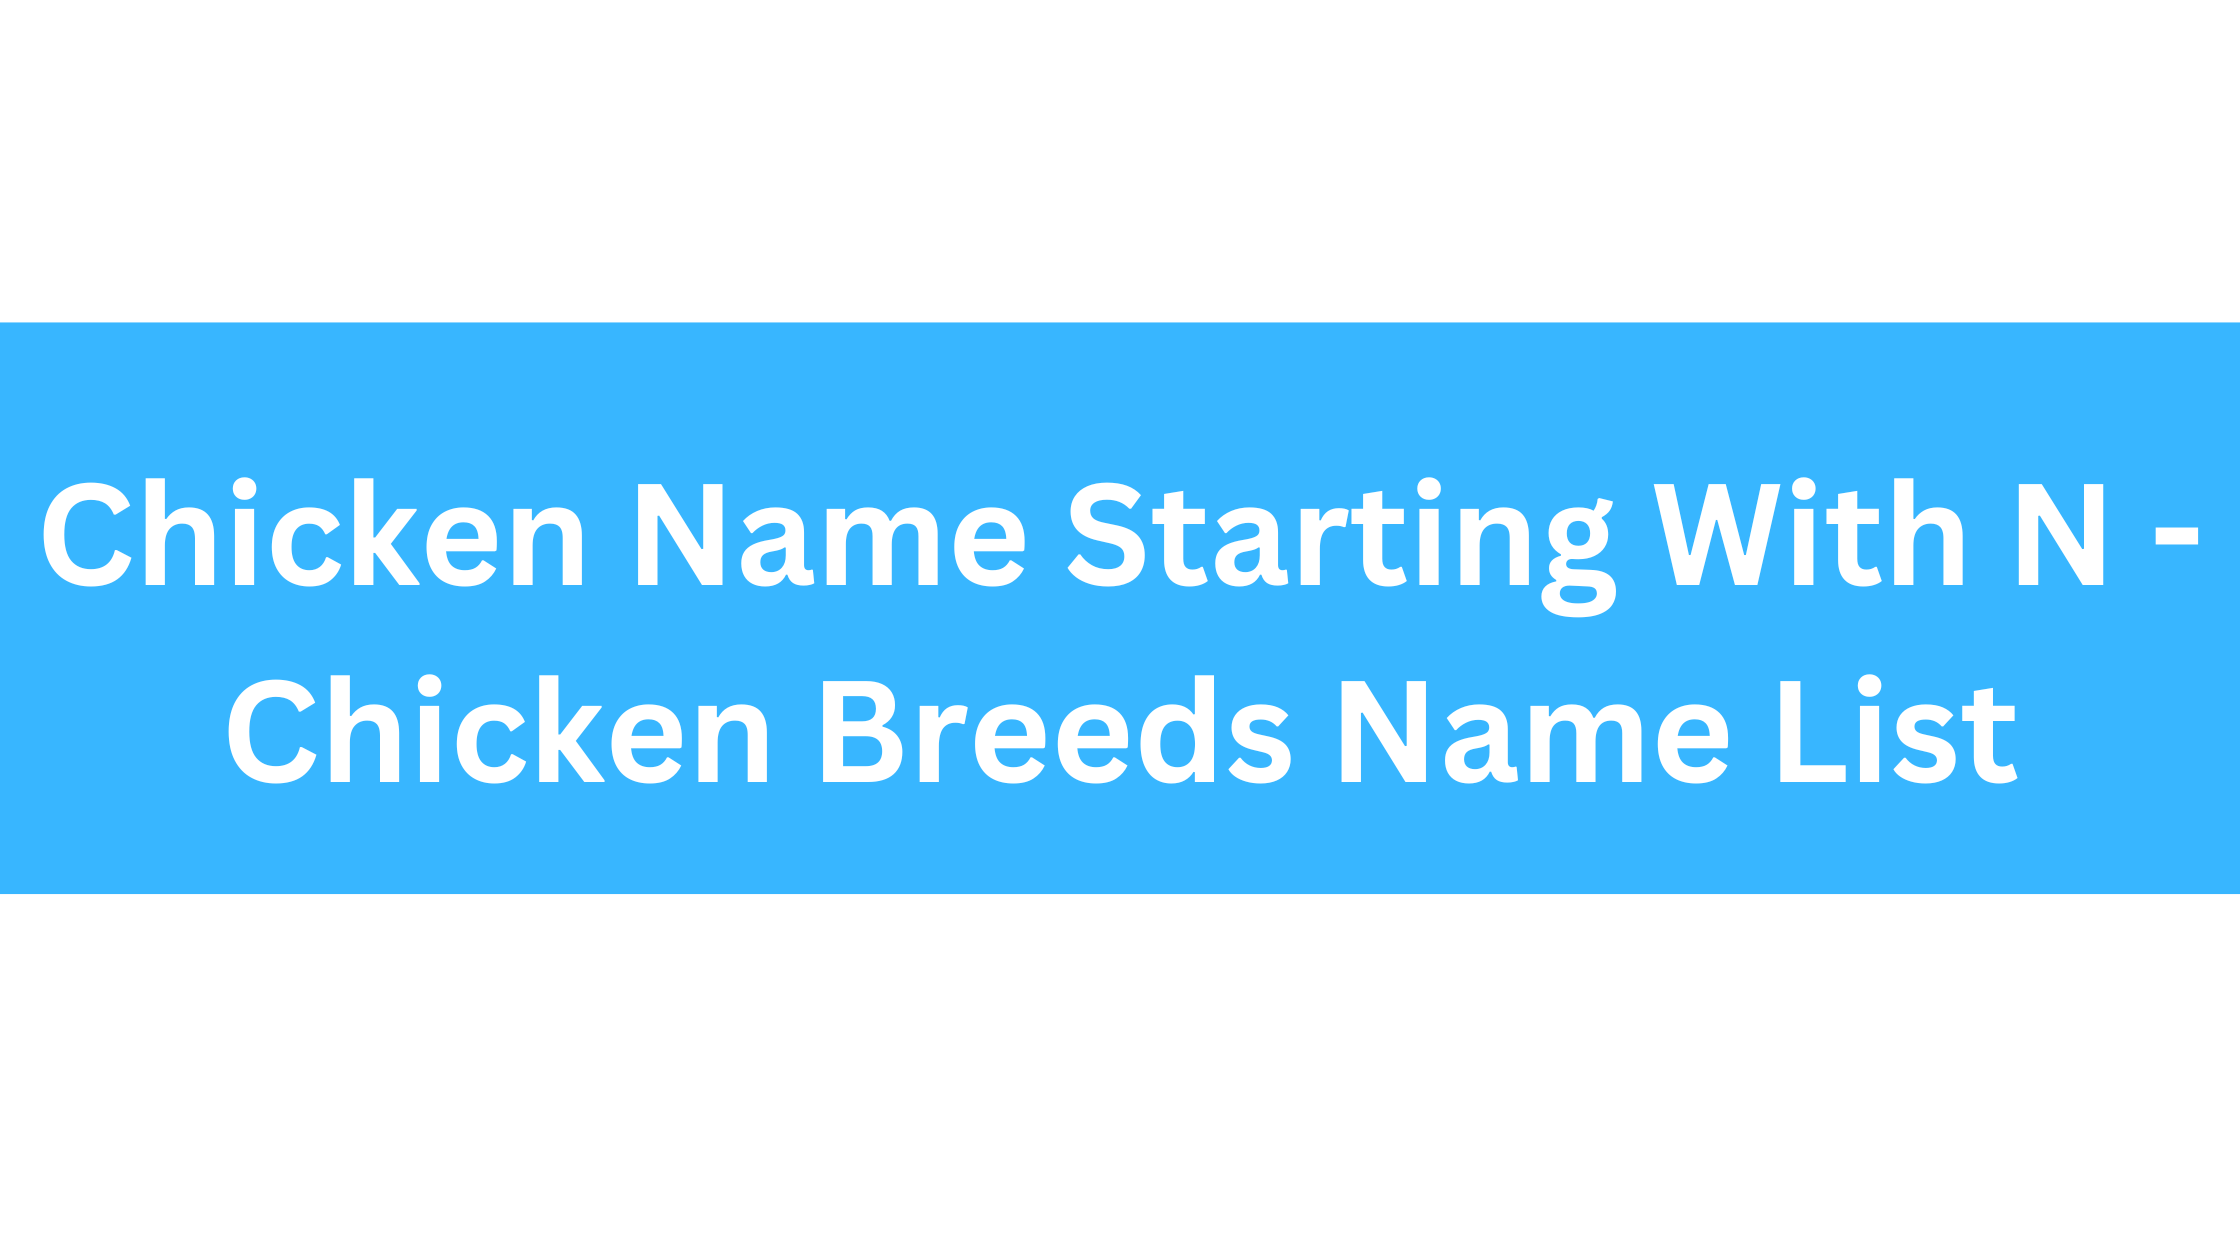 Chicken Breeds That Start With N